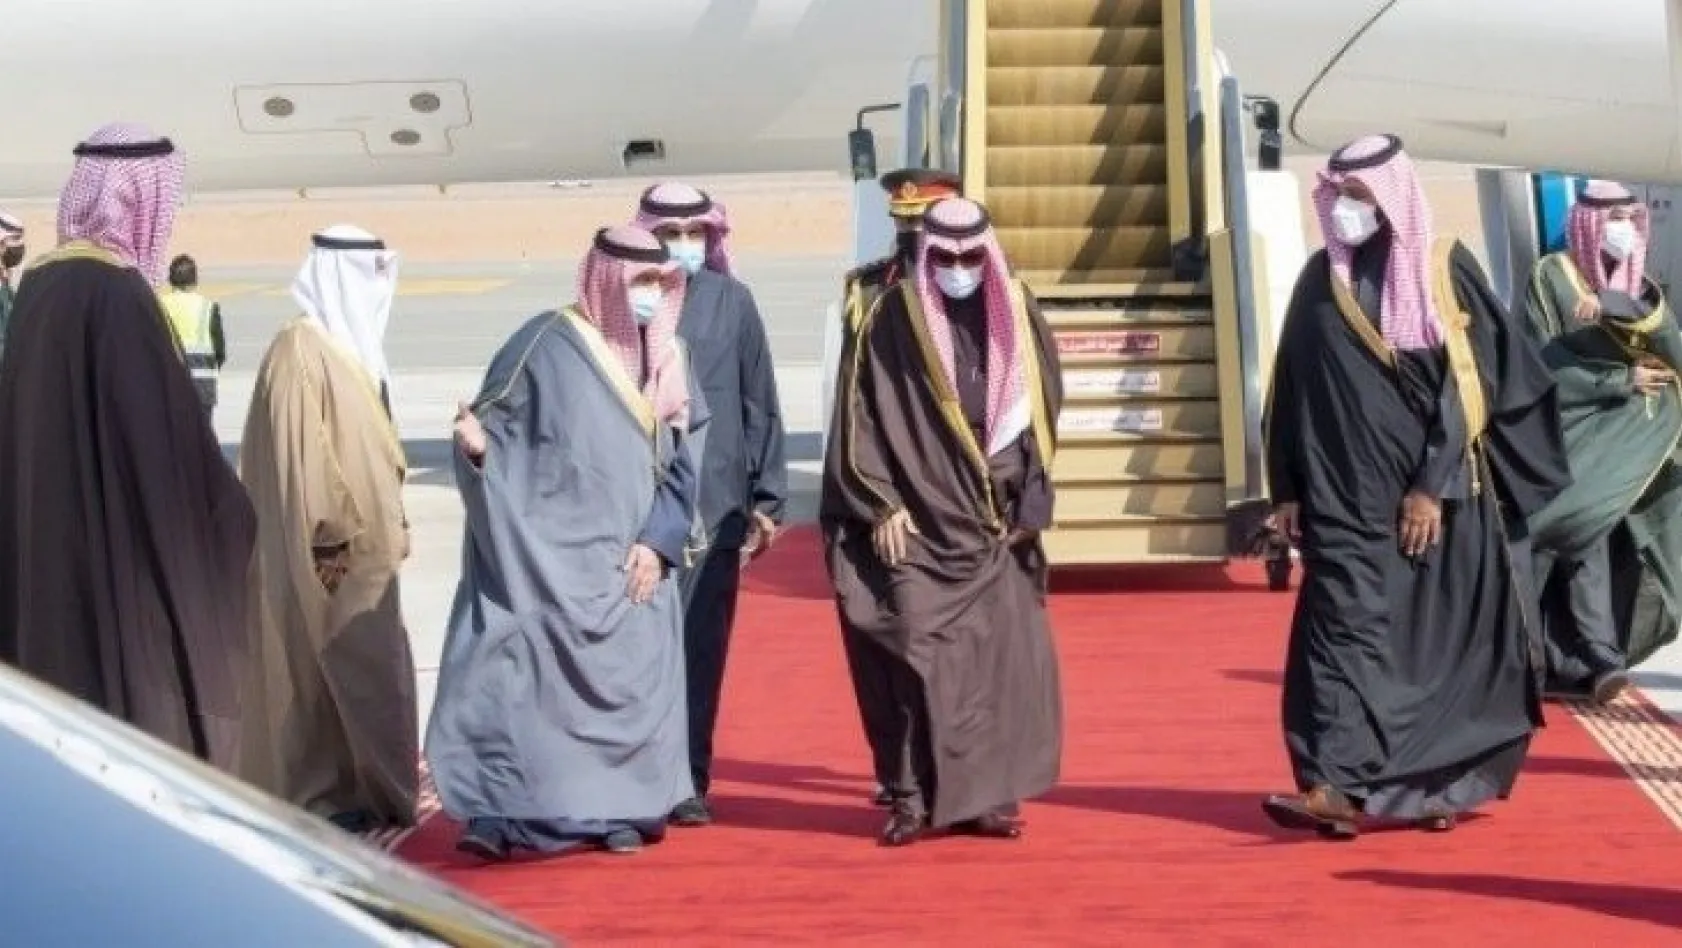 Suudi Arabistan ve Katar'ın bugün anlaşma imzalaması bekleniyor